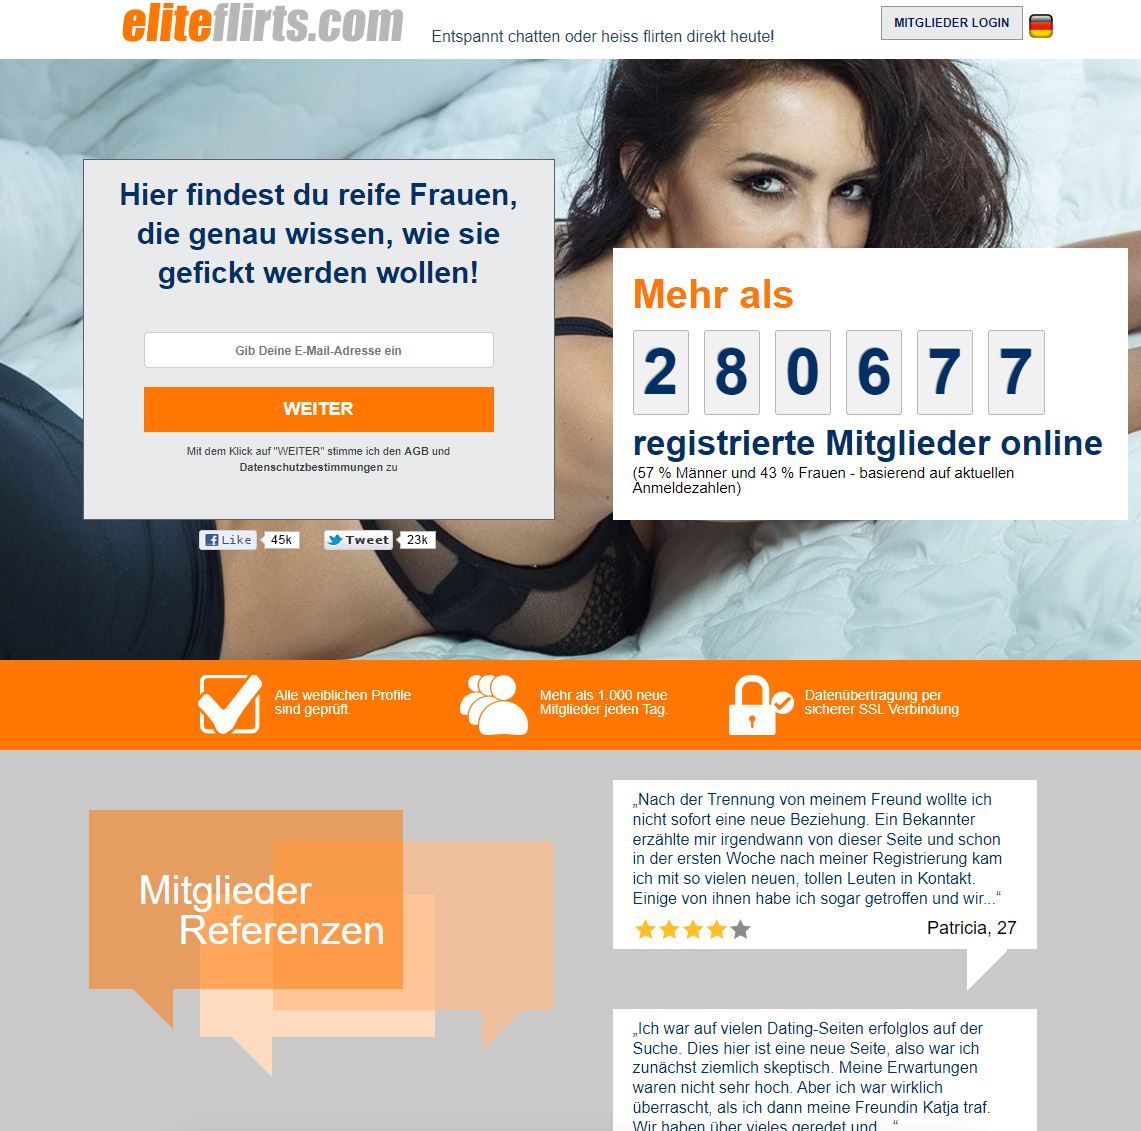 Im kostenlose Sex von Eliteflirts.com findest du Sex & Erotik Kontakte.